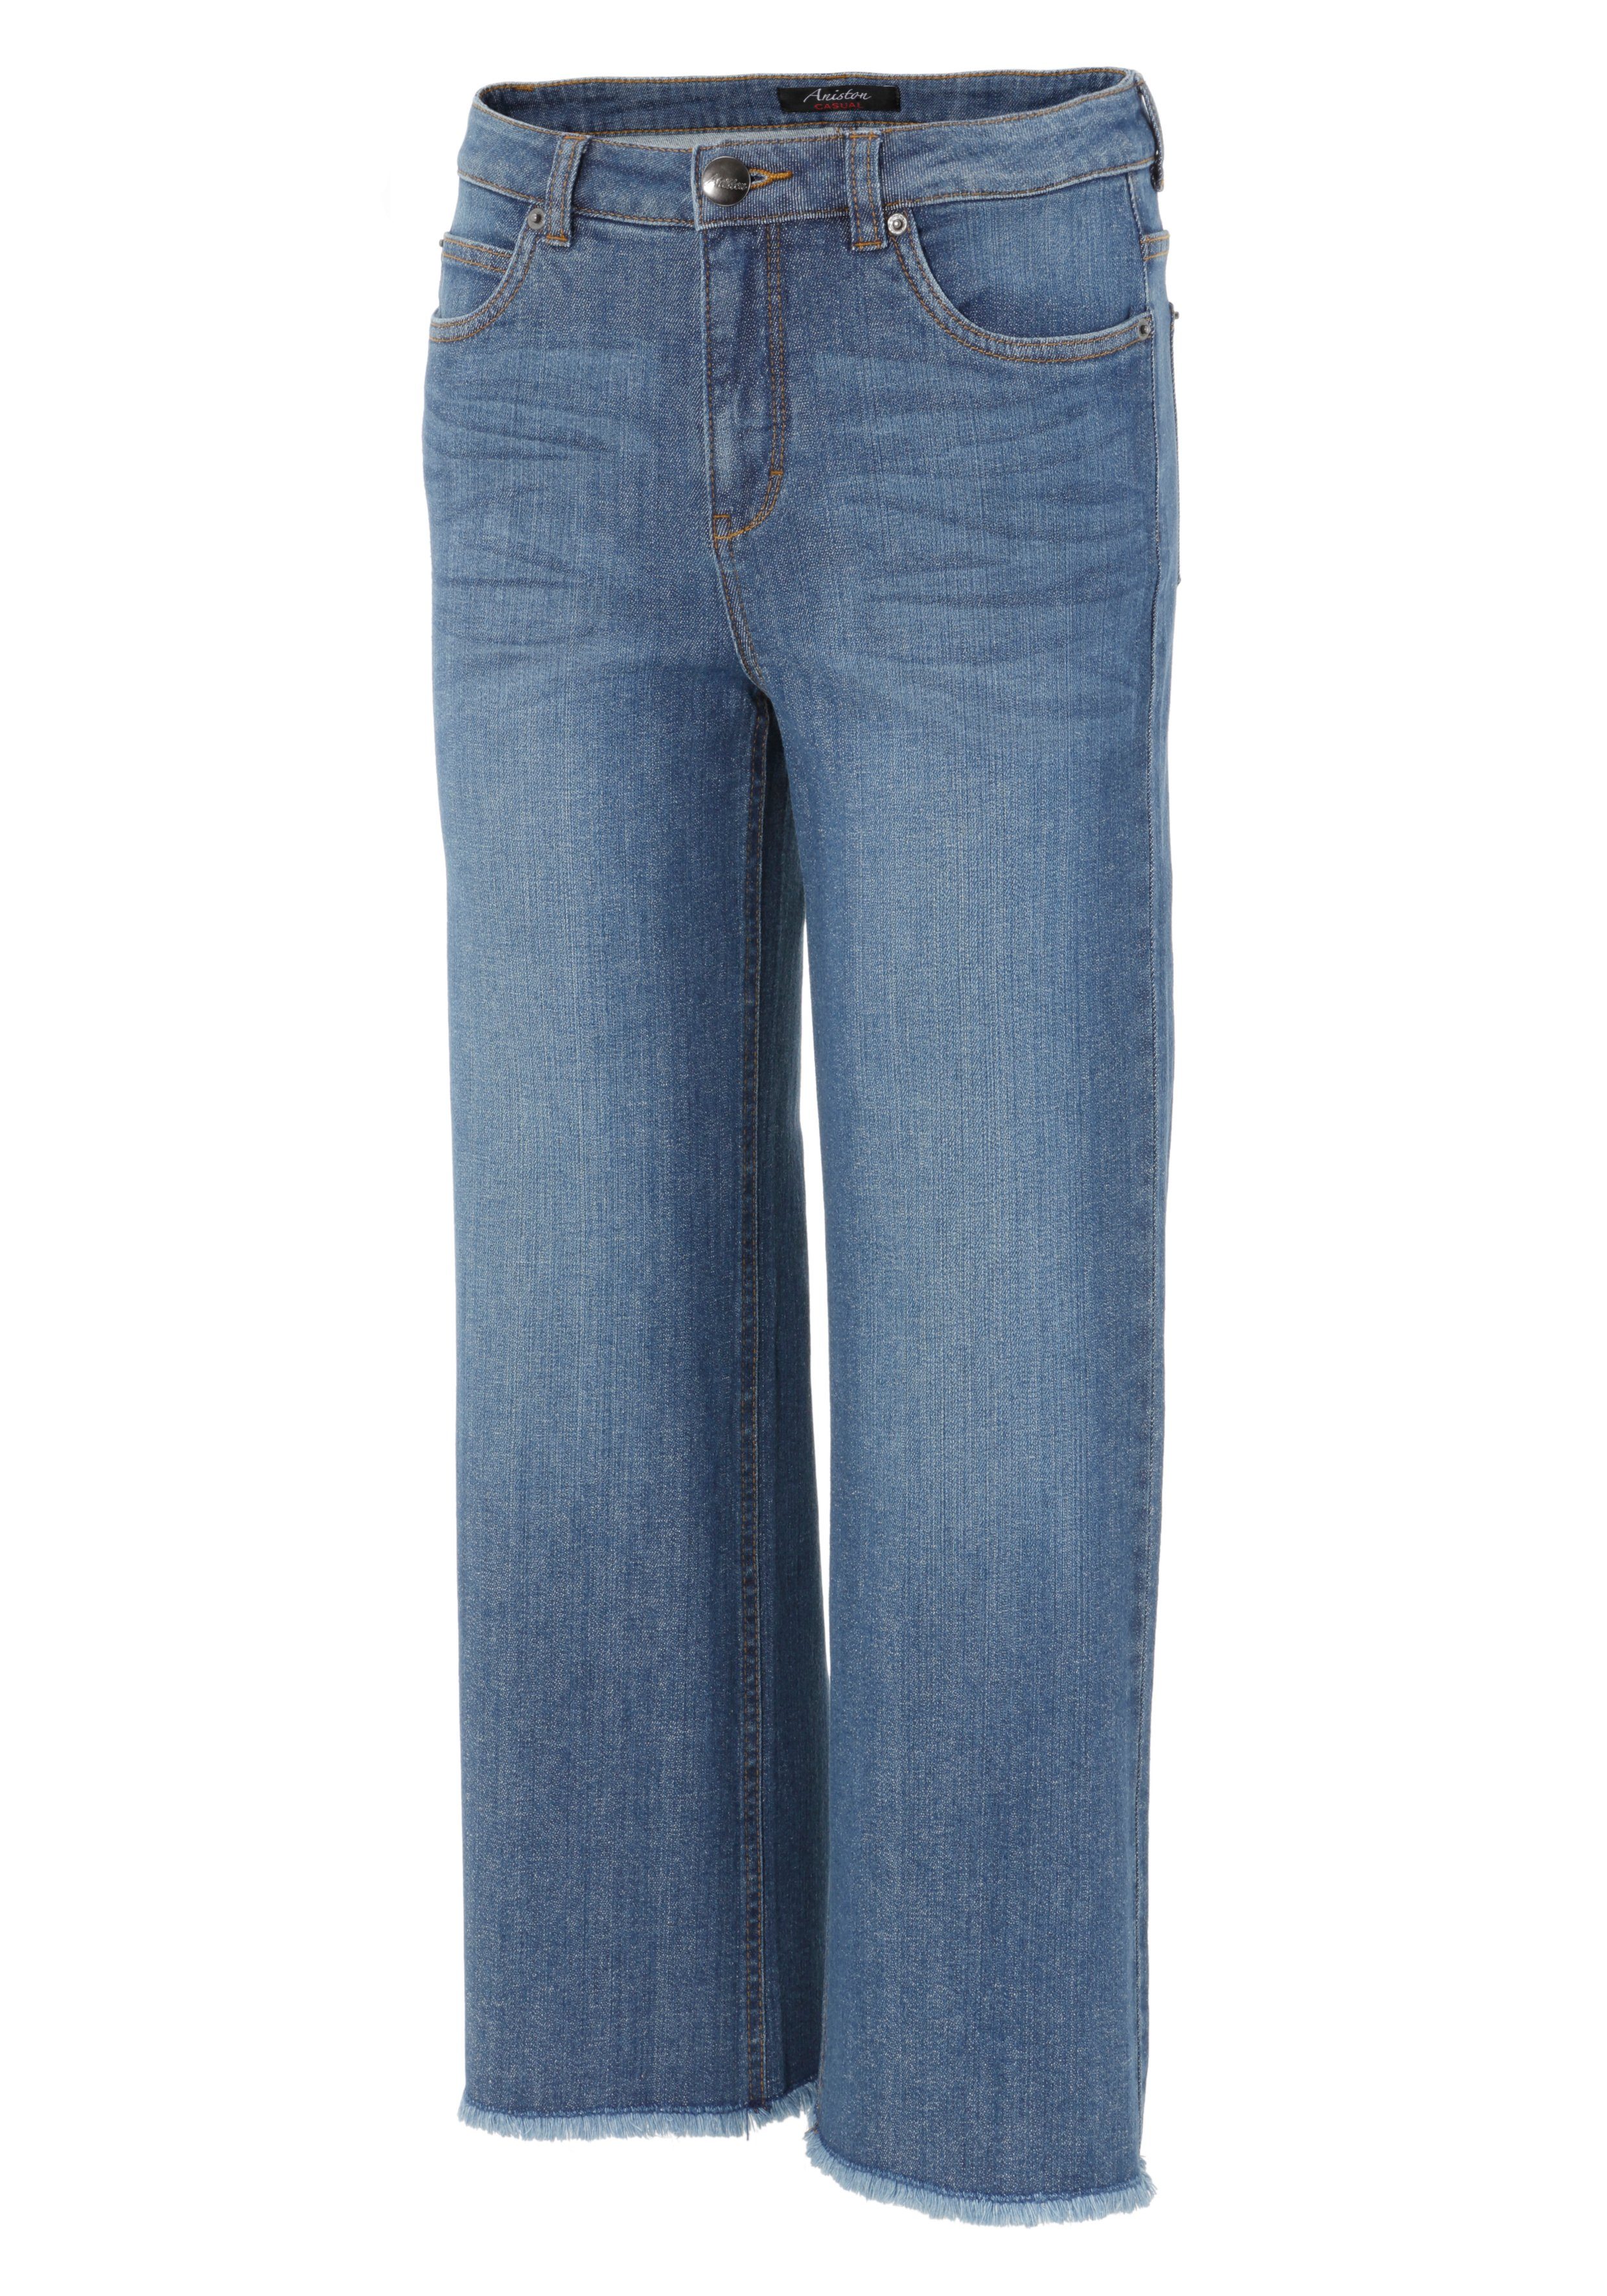 Aniston CASUAL 7/8-Jeans mit Beinabschluss darkblue leicht ausgefranstem